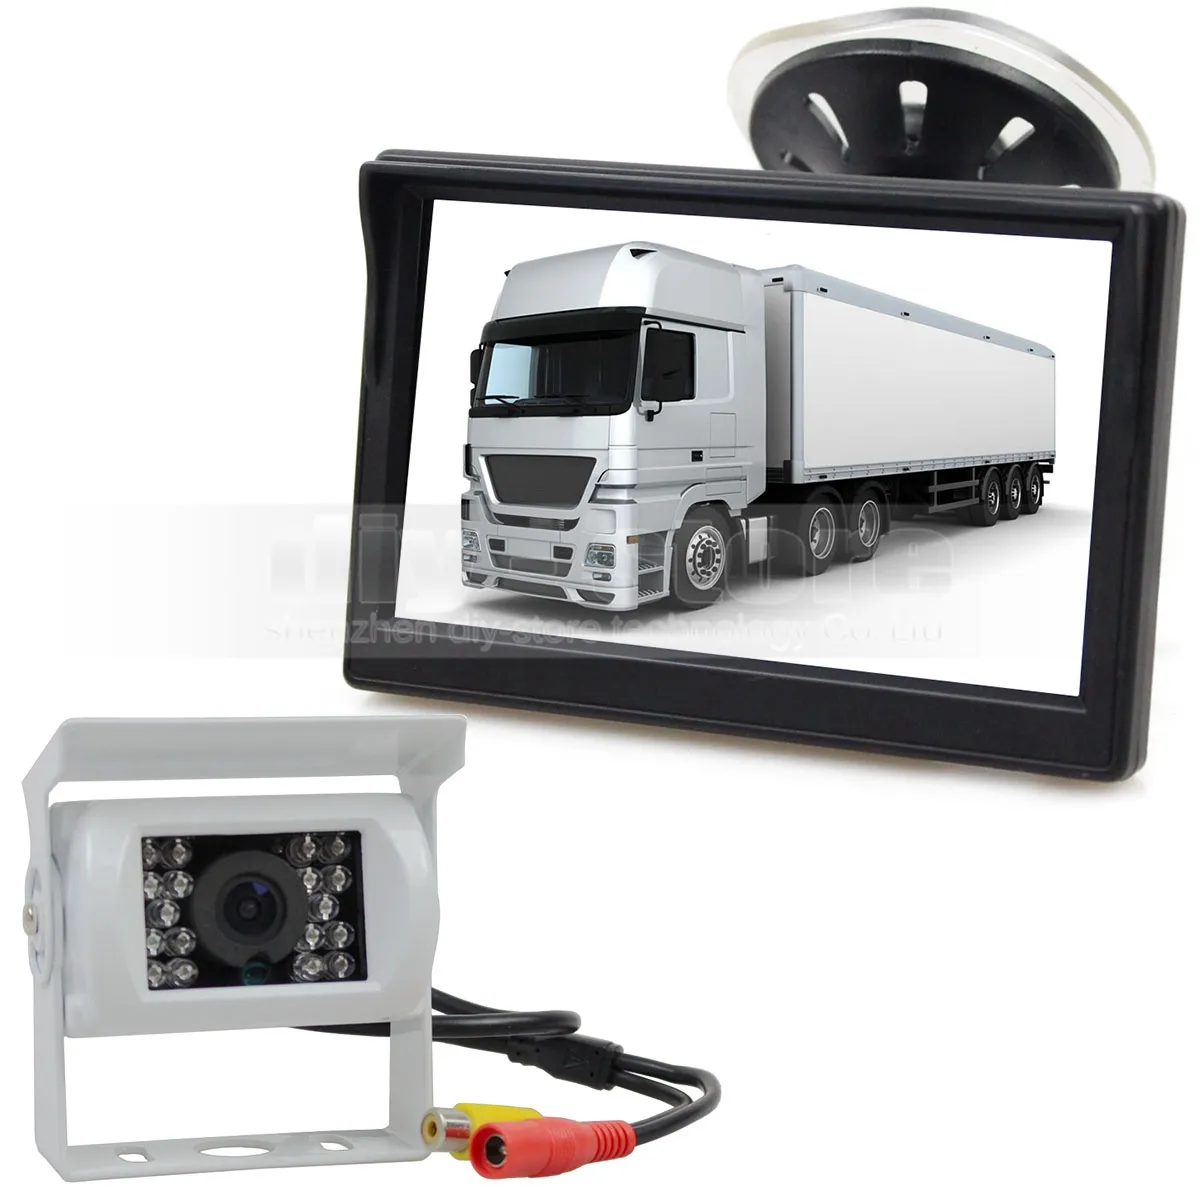 5INCH Videobilskärm IR-bilkamera Bakifrån Kamera Säkerhetssystem Parkering Växellåda System Kit för bilbil Buss